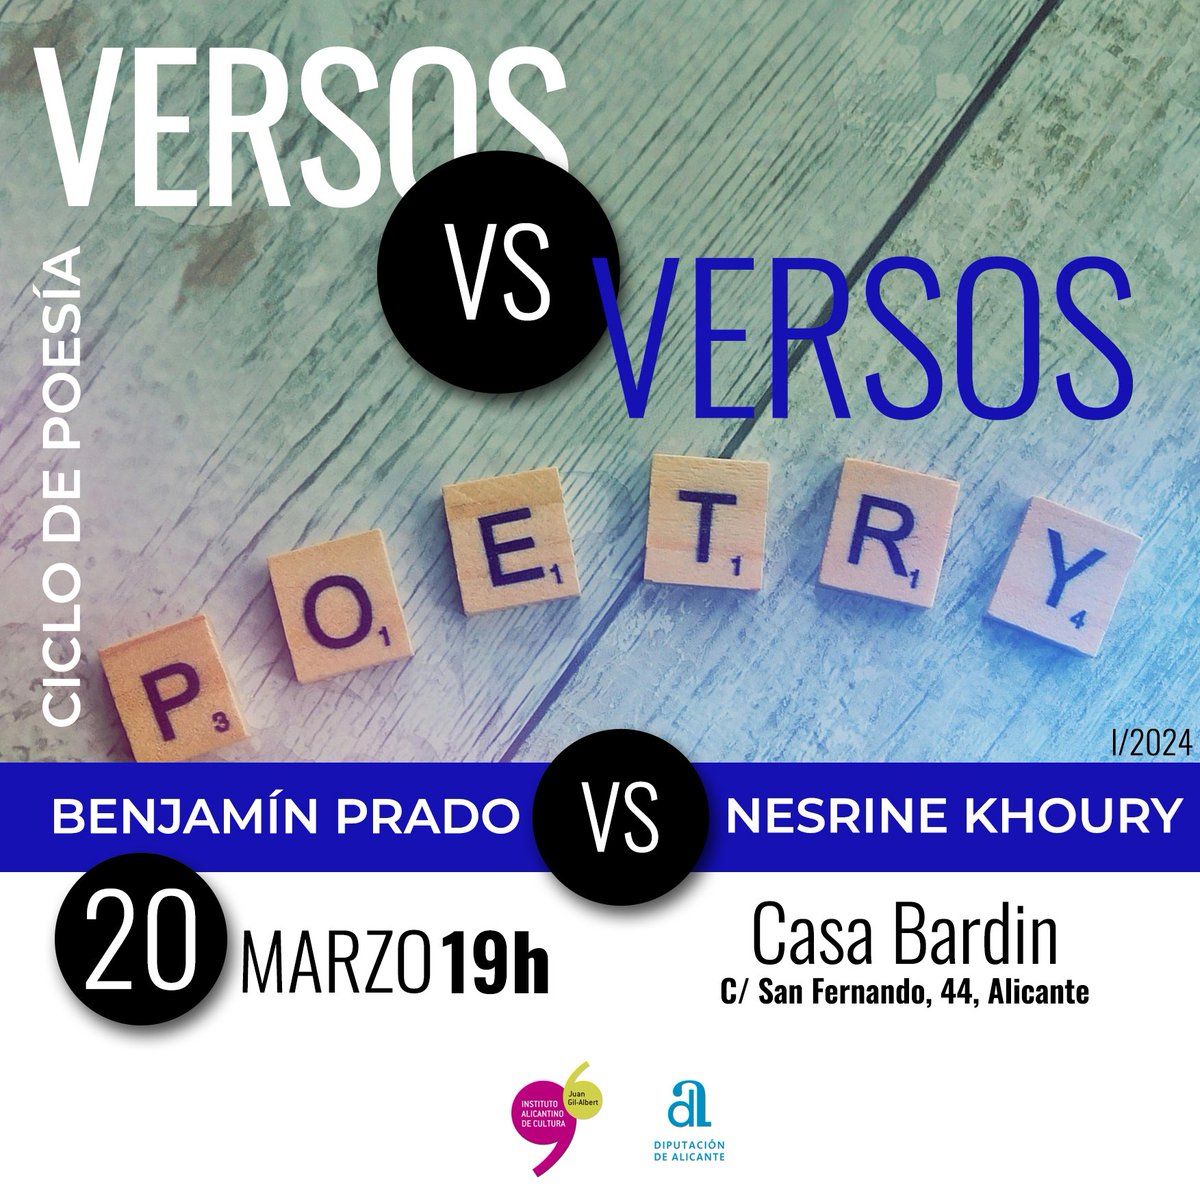 🔜 El 20 de marzo a las 19 horas tienes una cita con el ciclo de poesía “Versos vs Versos” con Benjamín Prado y Nesrine Khoury 📖 Participarán dos poetas de generaciones distintas. Dos formas de concebir la creación poética. #cultura #institutojuangilalbert #poesia